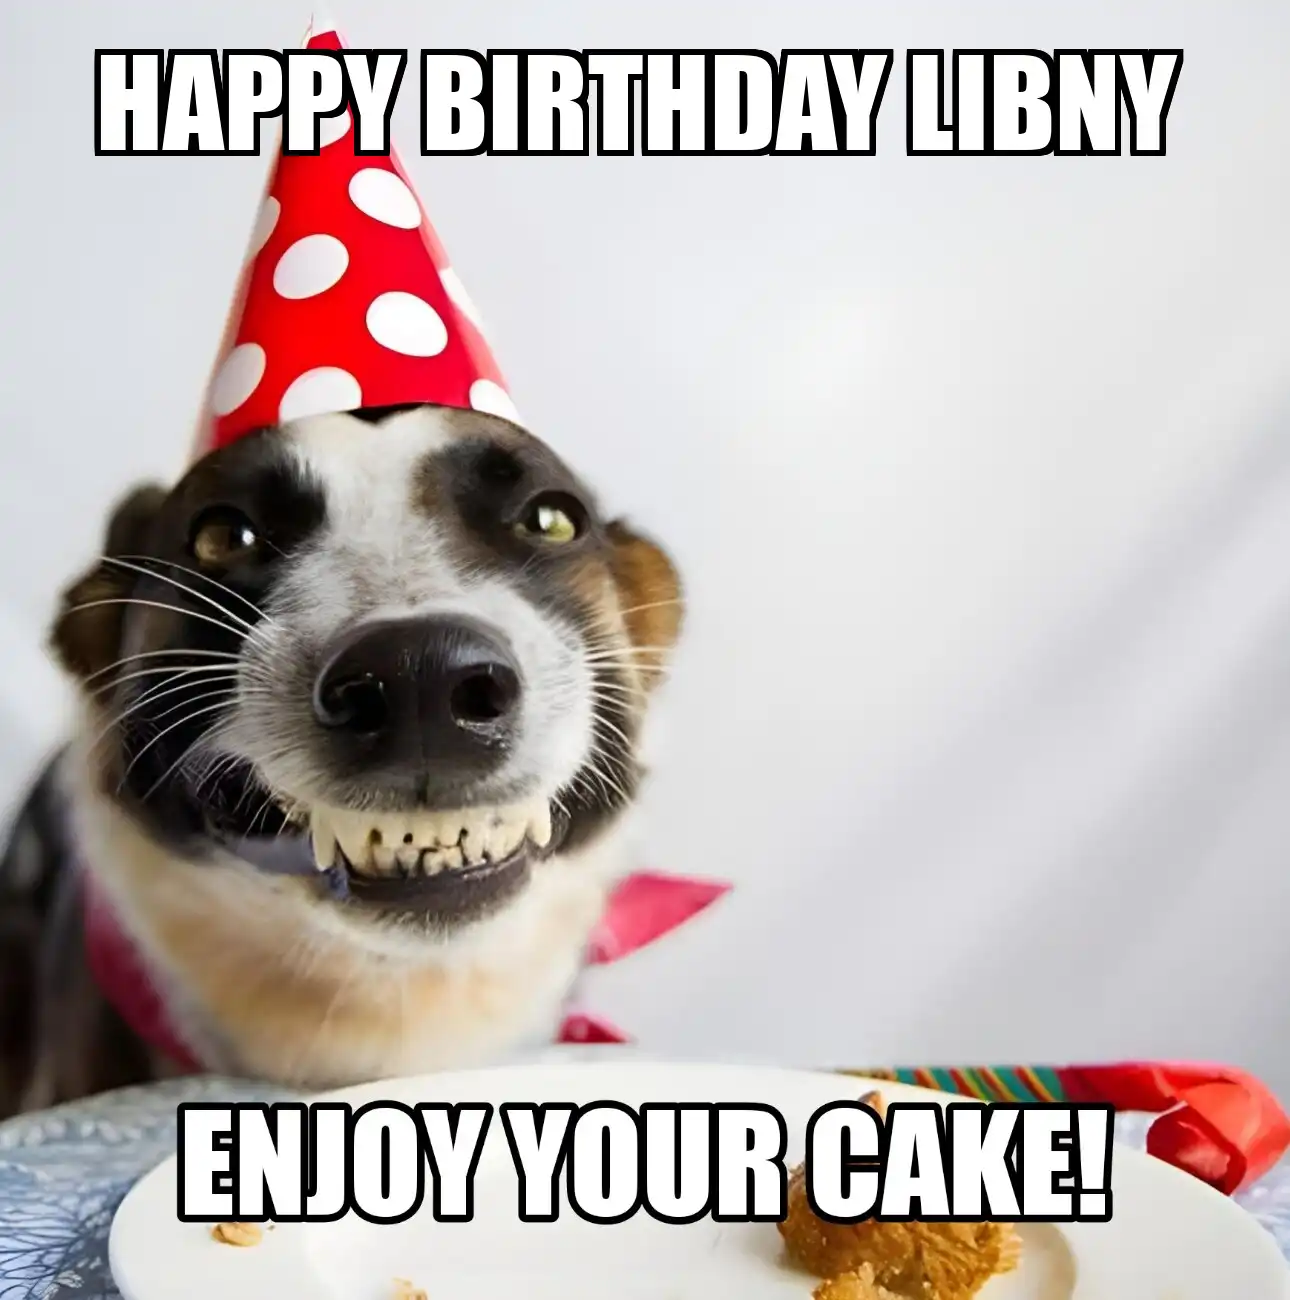 Happy Birthday Libny Enjoy Your Cake Dog Meme